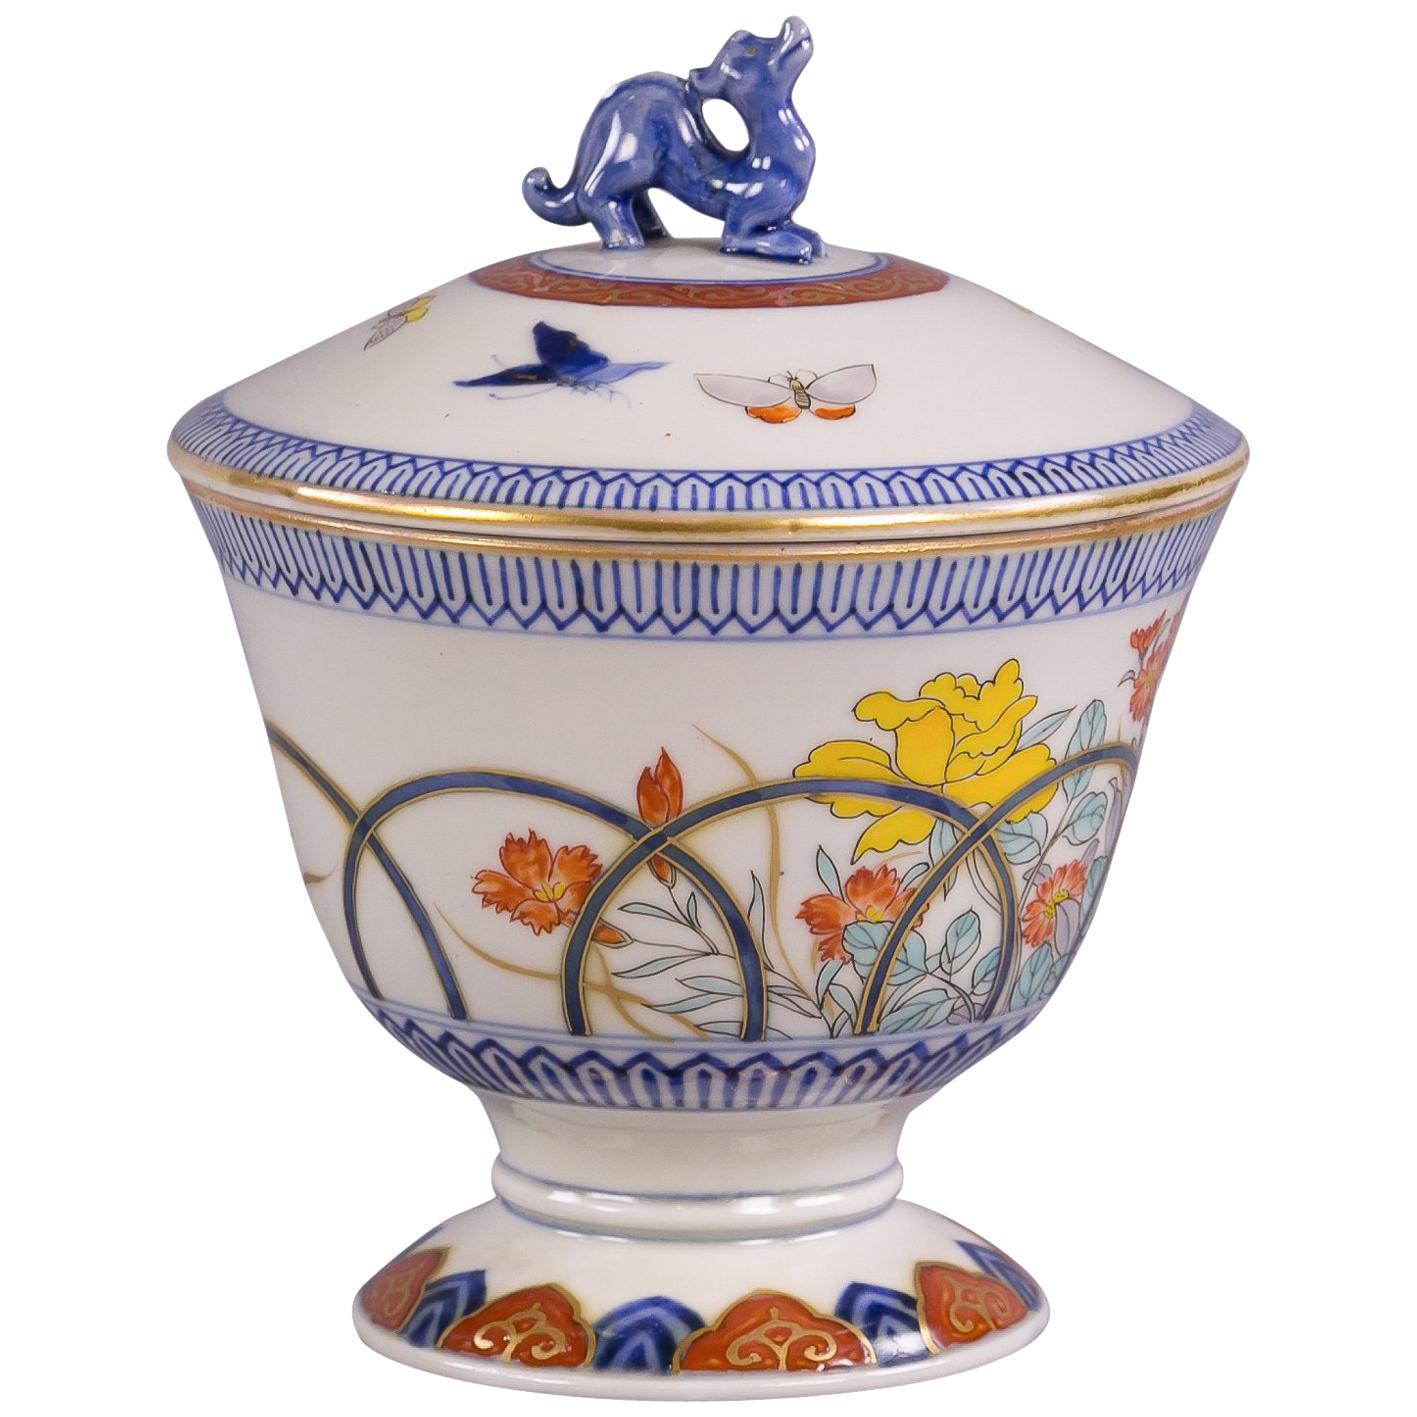 Japanisches Deckelglas aus japanischem Porzellan, um 1880